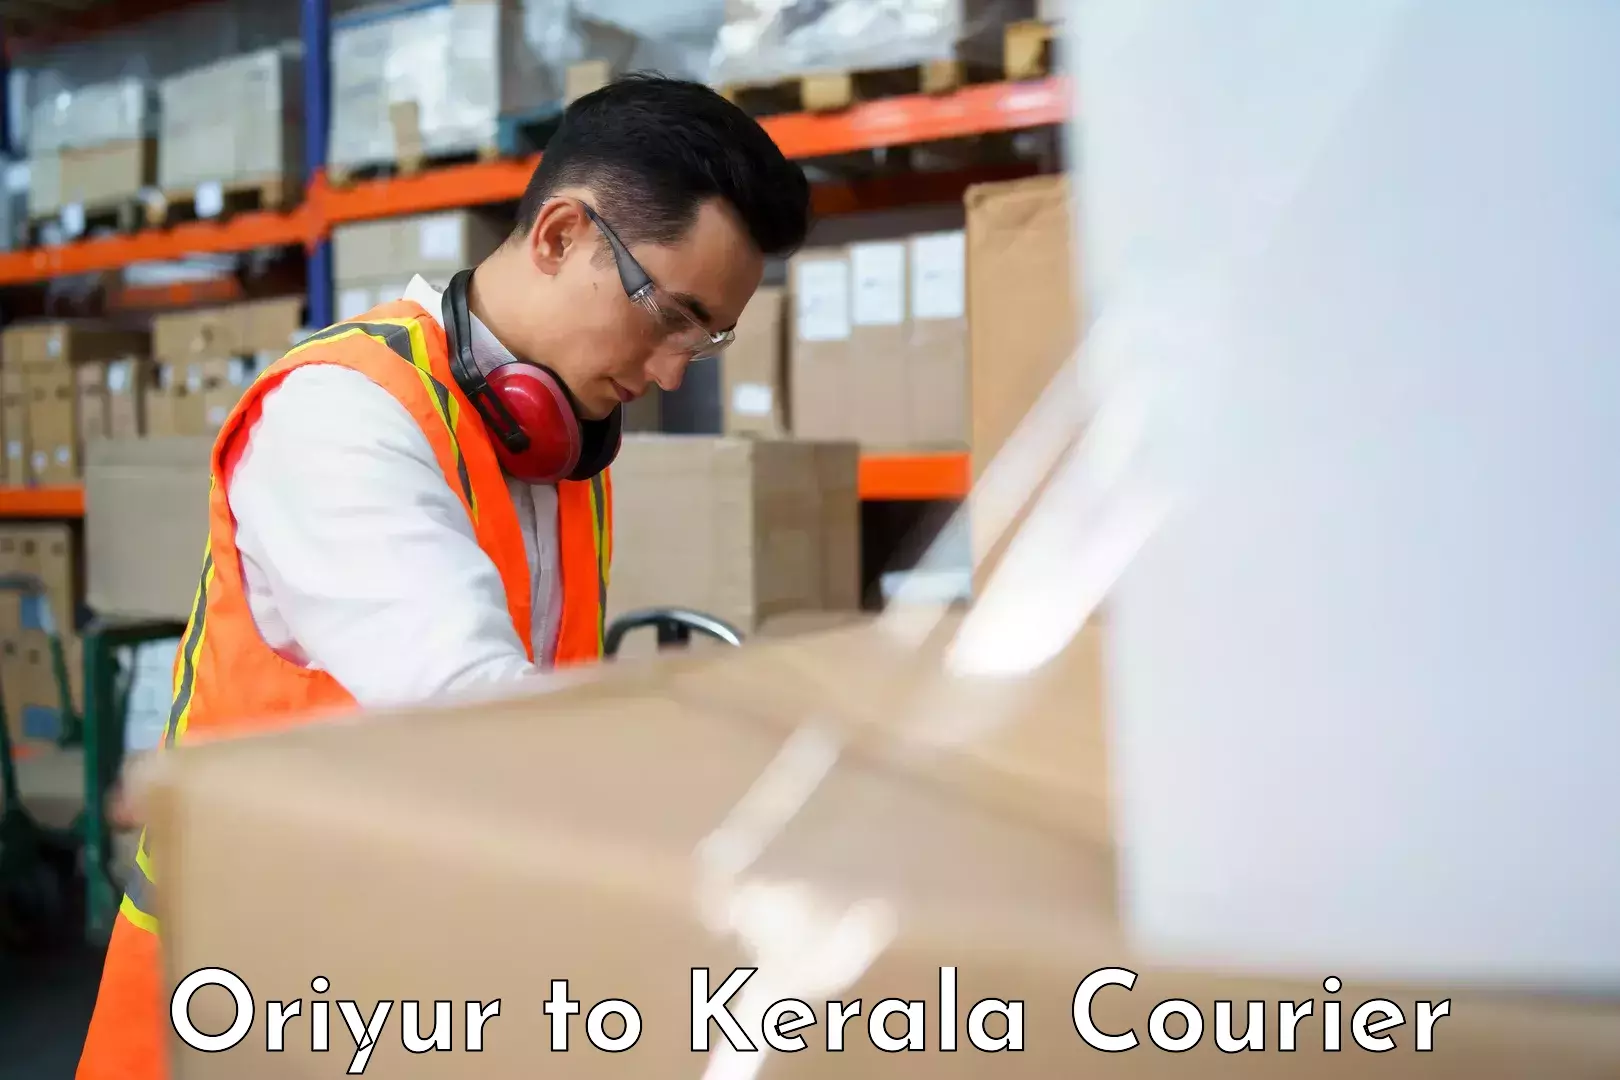 Professional moving assistance Oriyur to Kakkayam